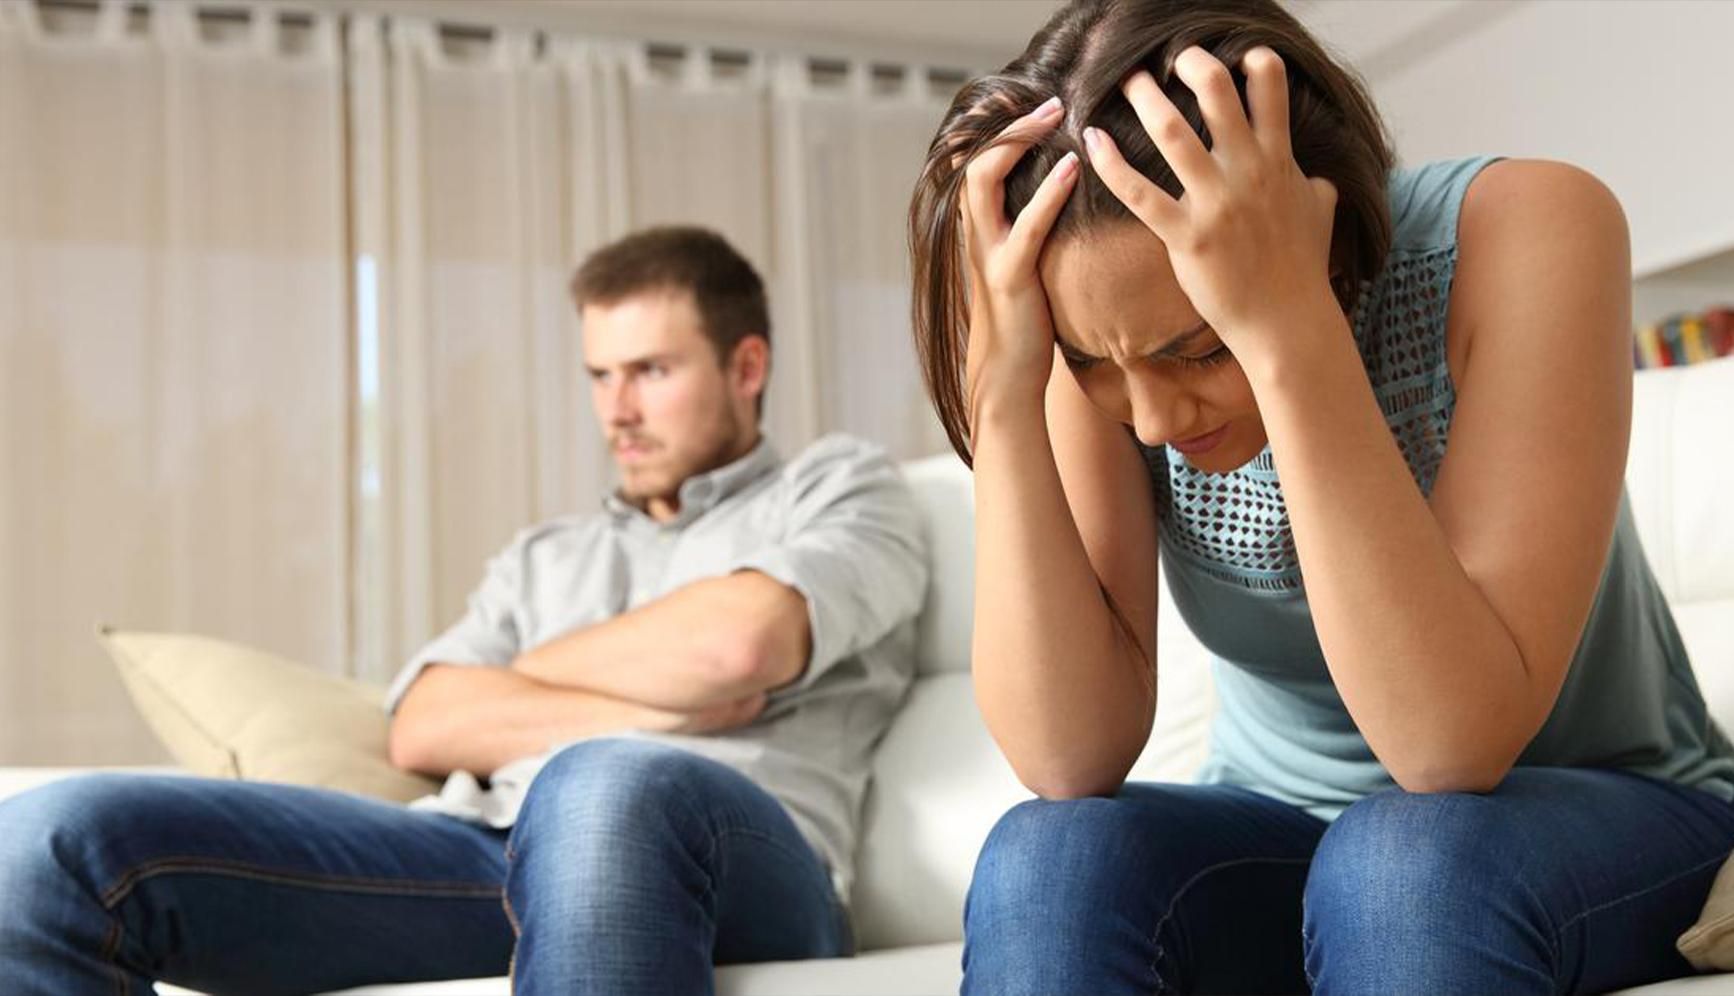 8 несущественных проблем в отношениях, которые могут разрушить ваш брак